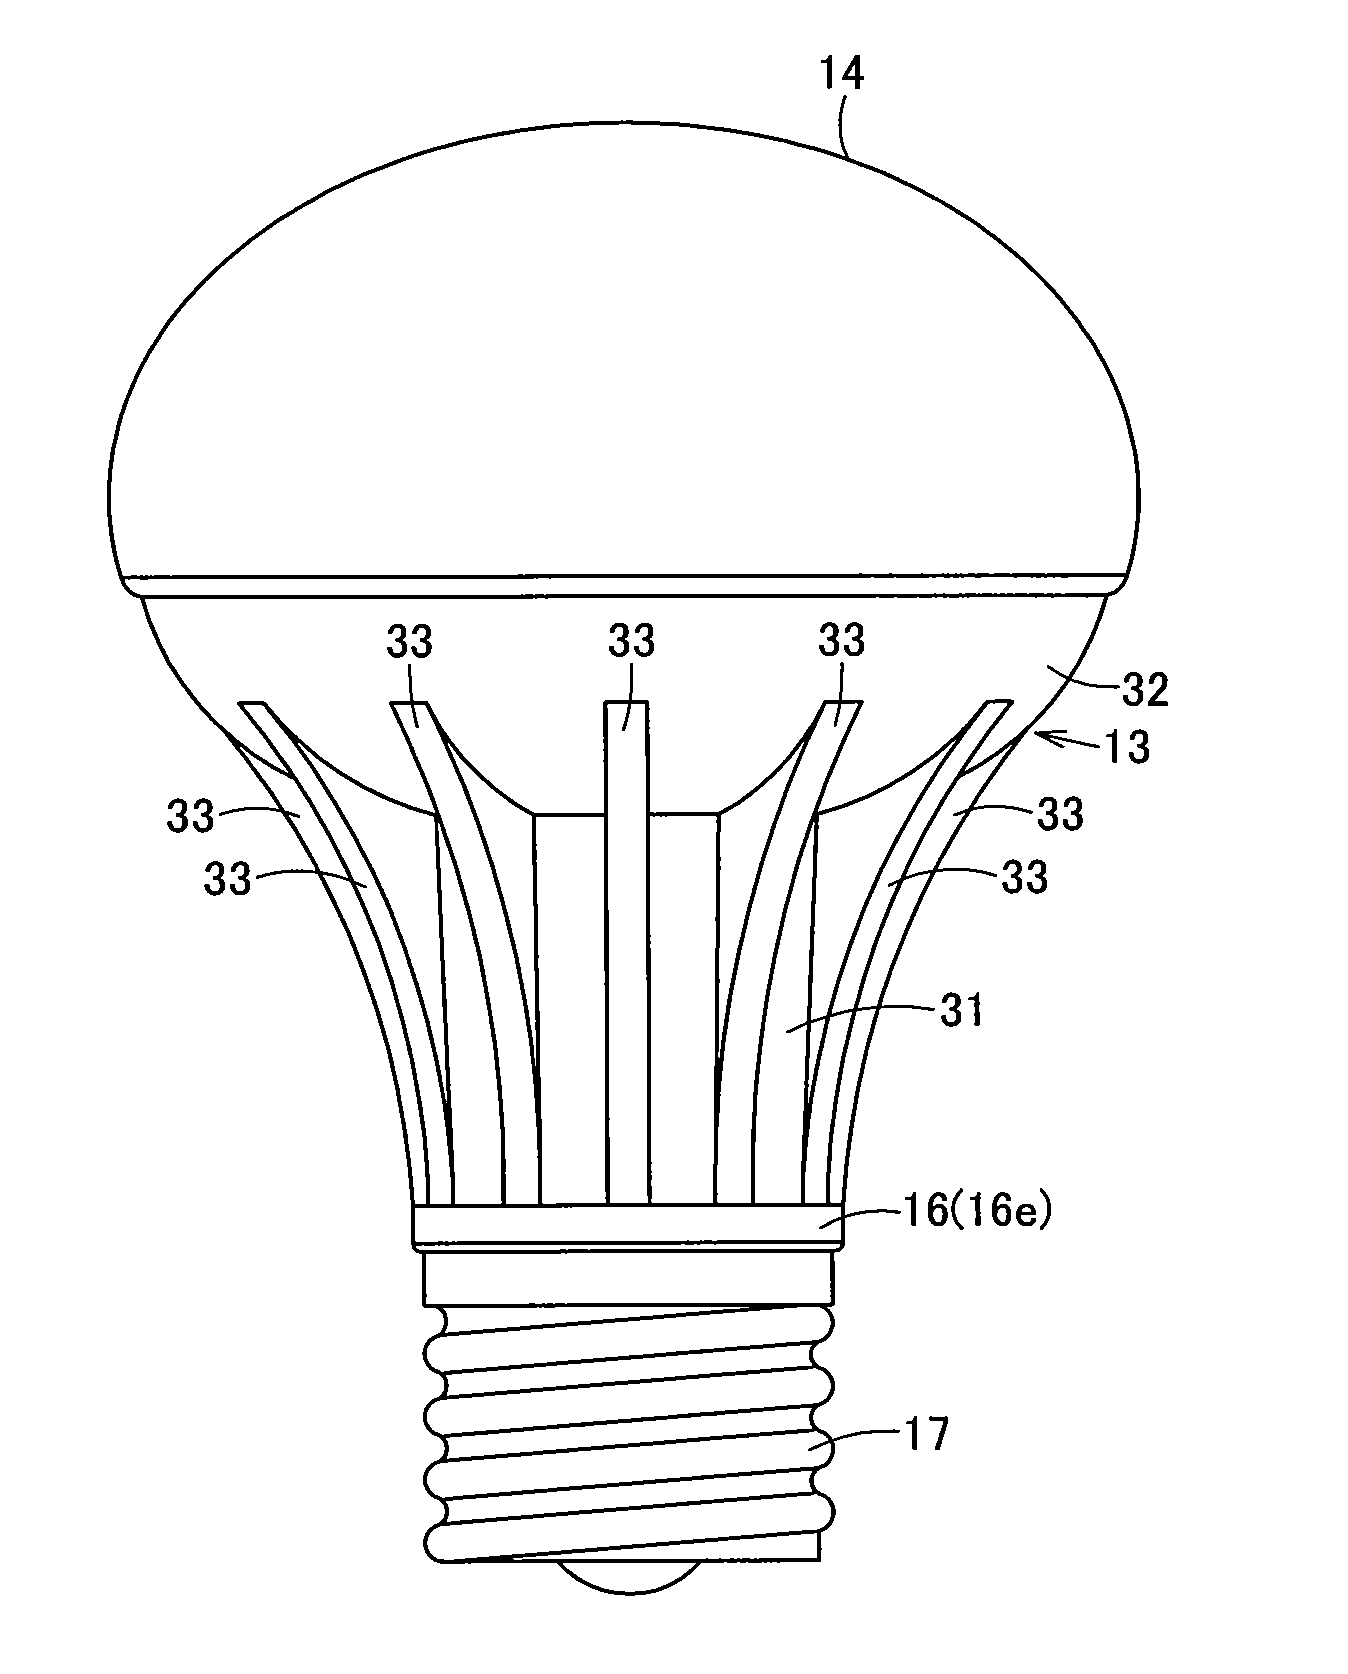 Lamp and lighting equipment